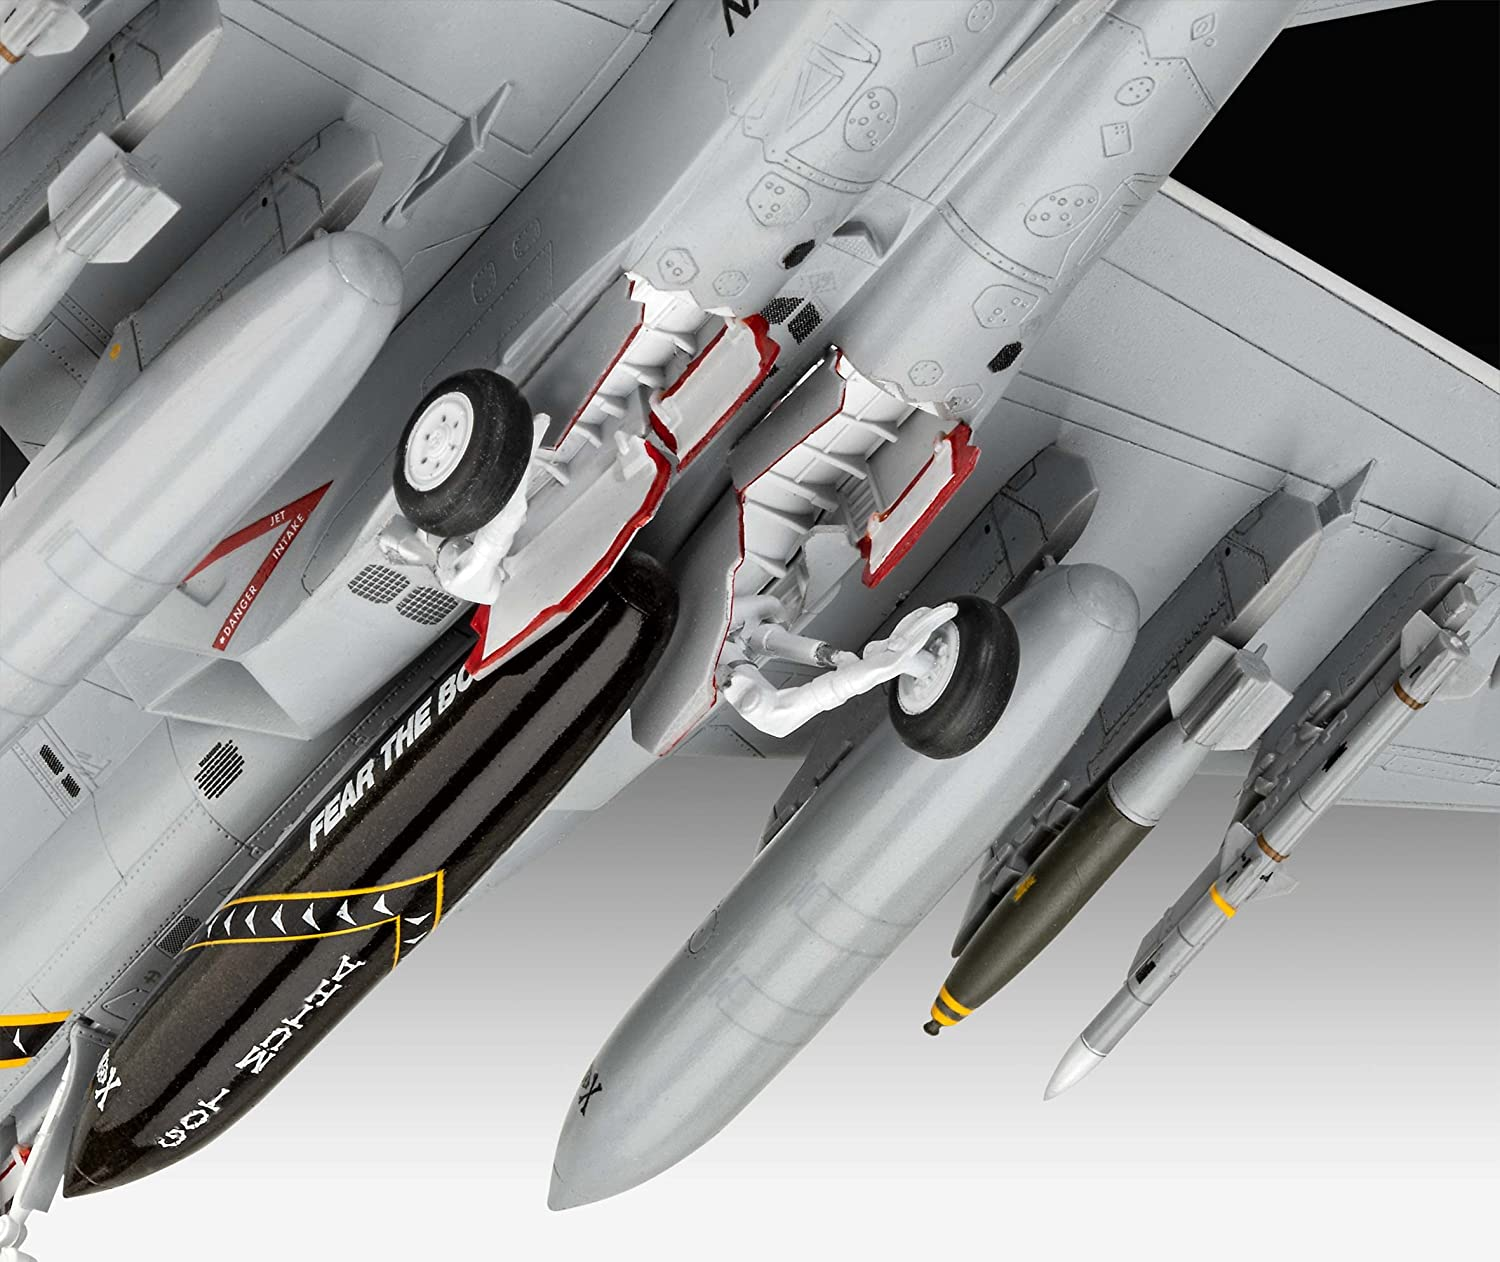 F/A-18F Modell Super Hornet REVELL Modellbau